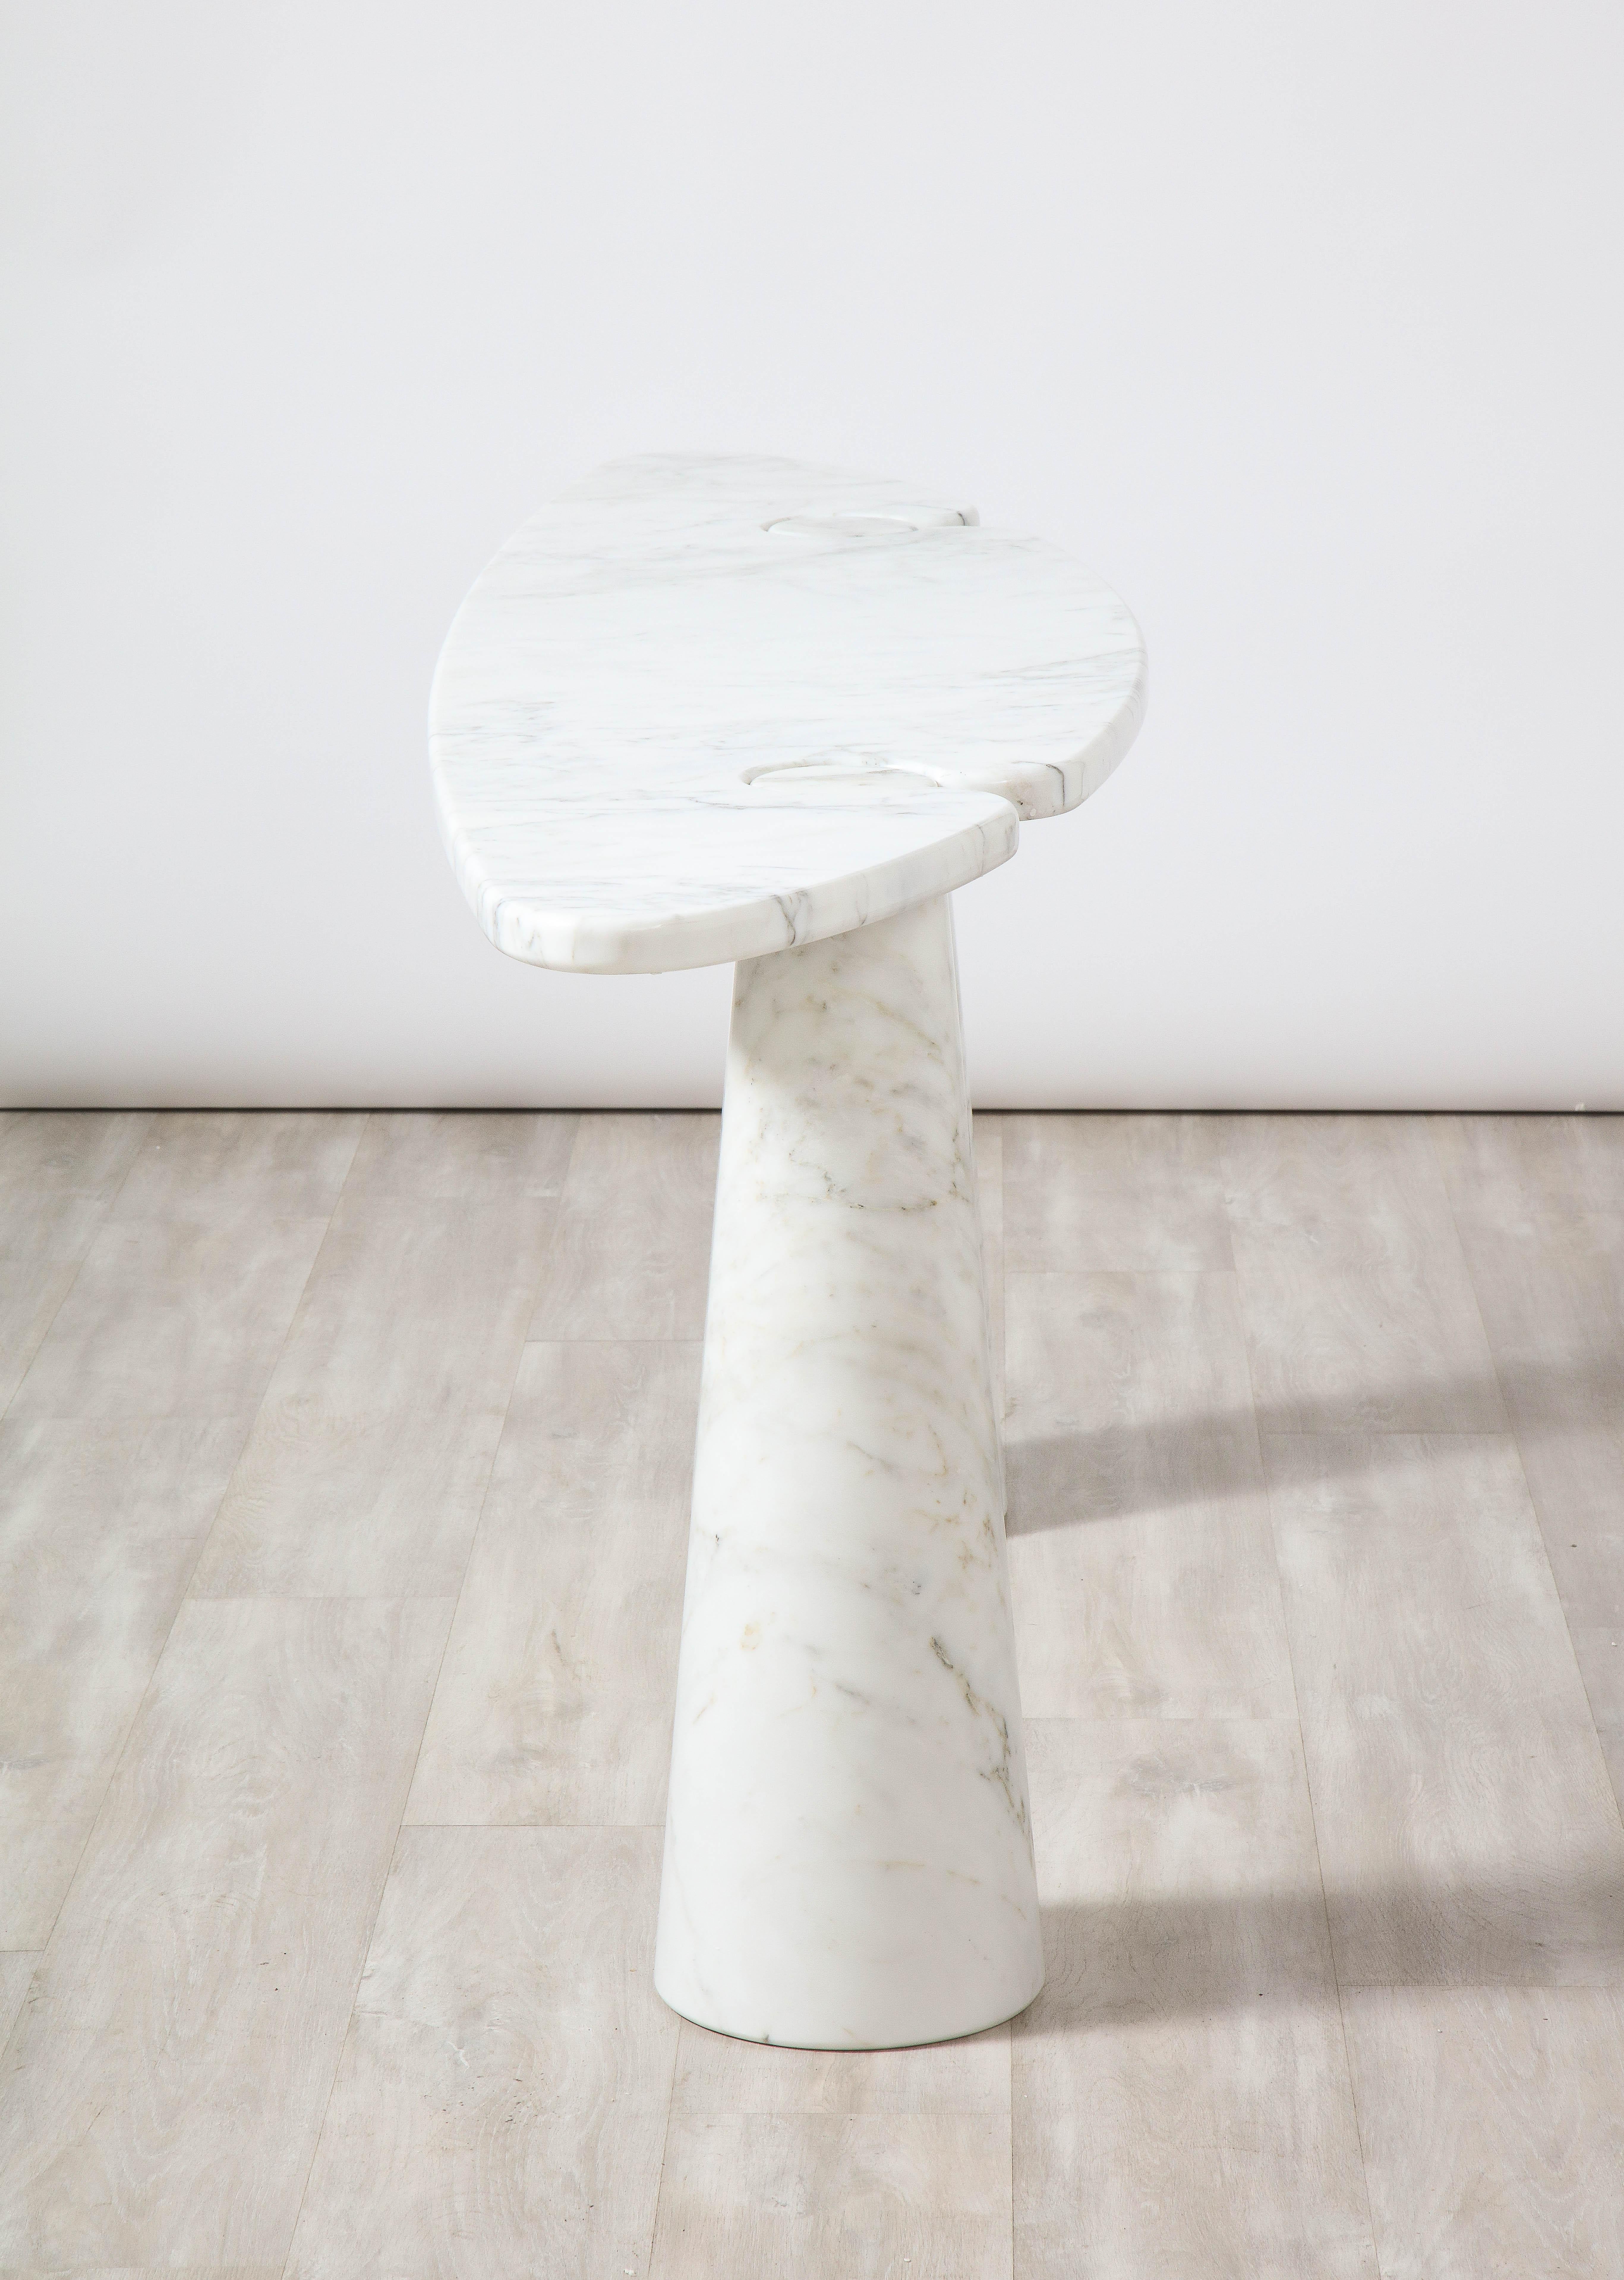 Angelo Mangiarotti 'Eros' Carrara Marble Console Table For Sale 8